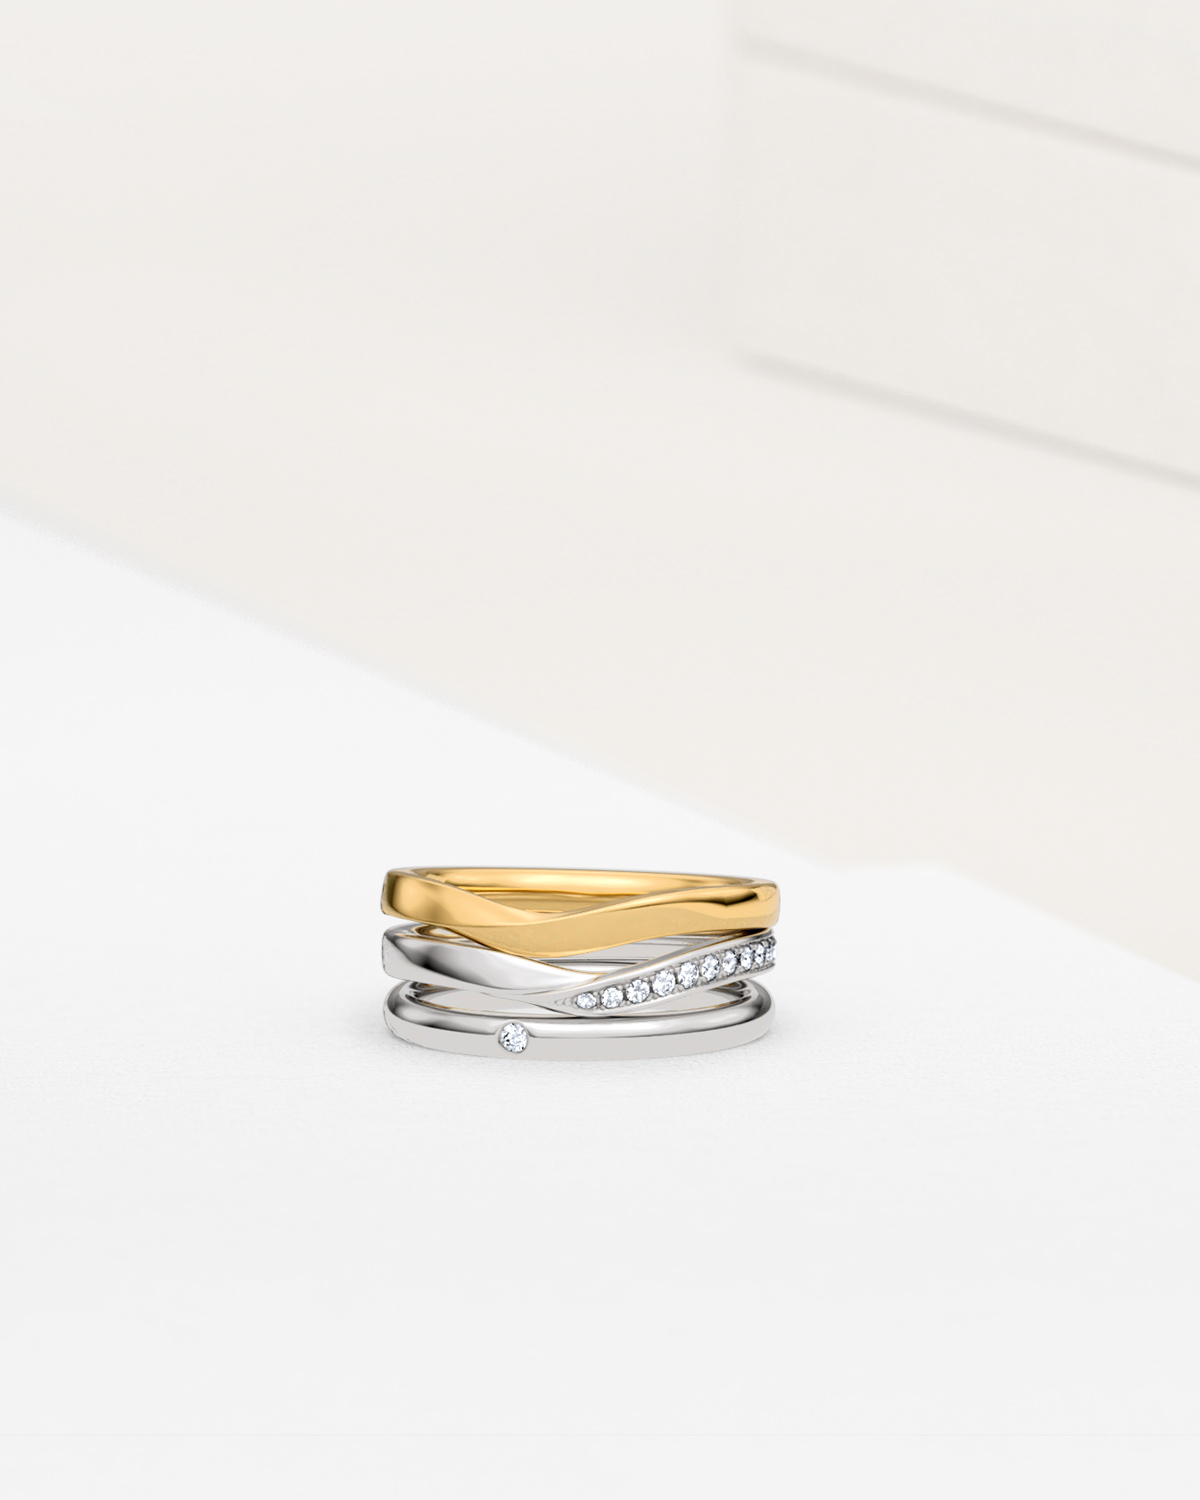 当店製作のV字及びストレートを含む結婚指輪3本の組合せ